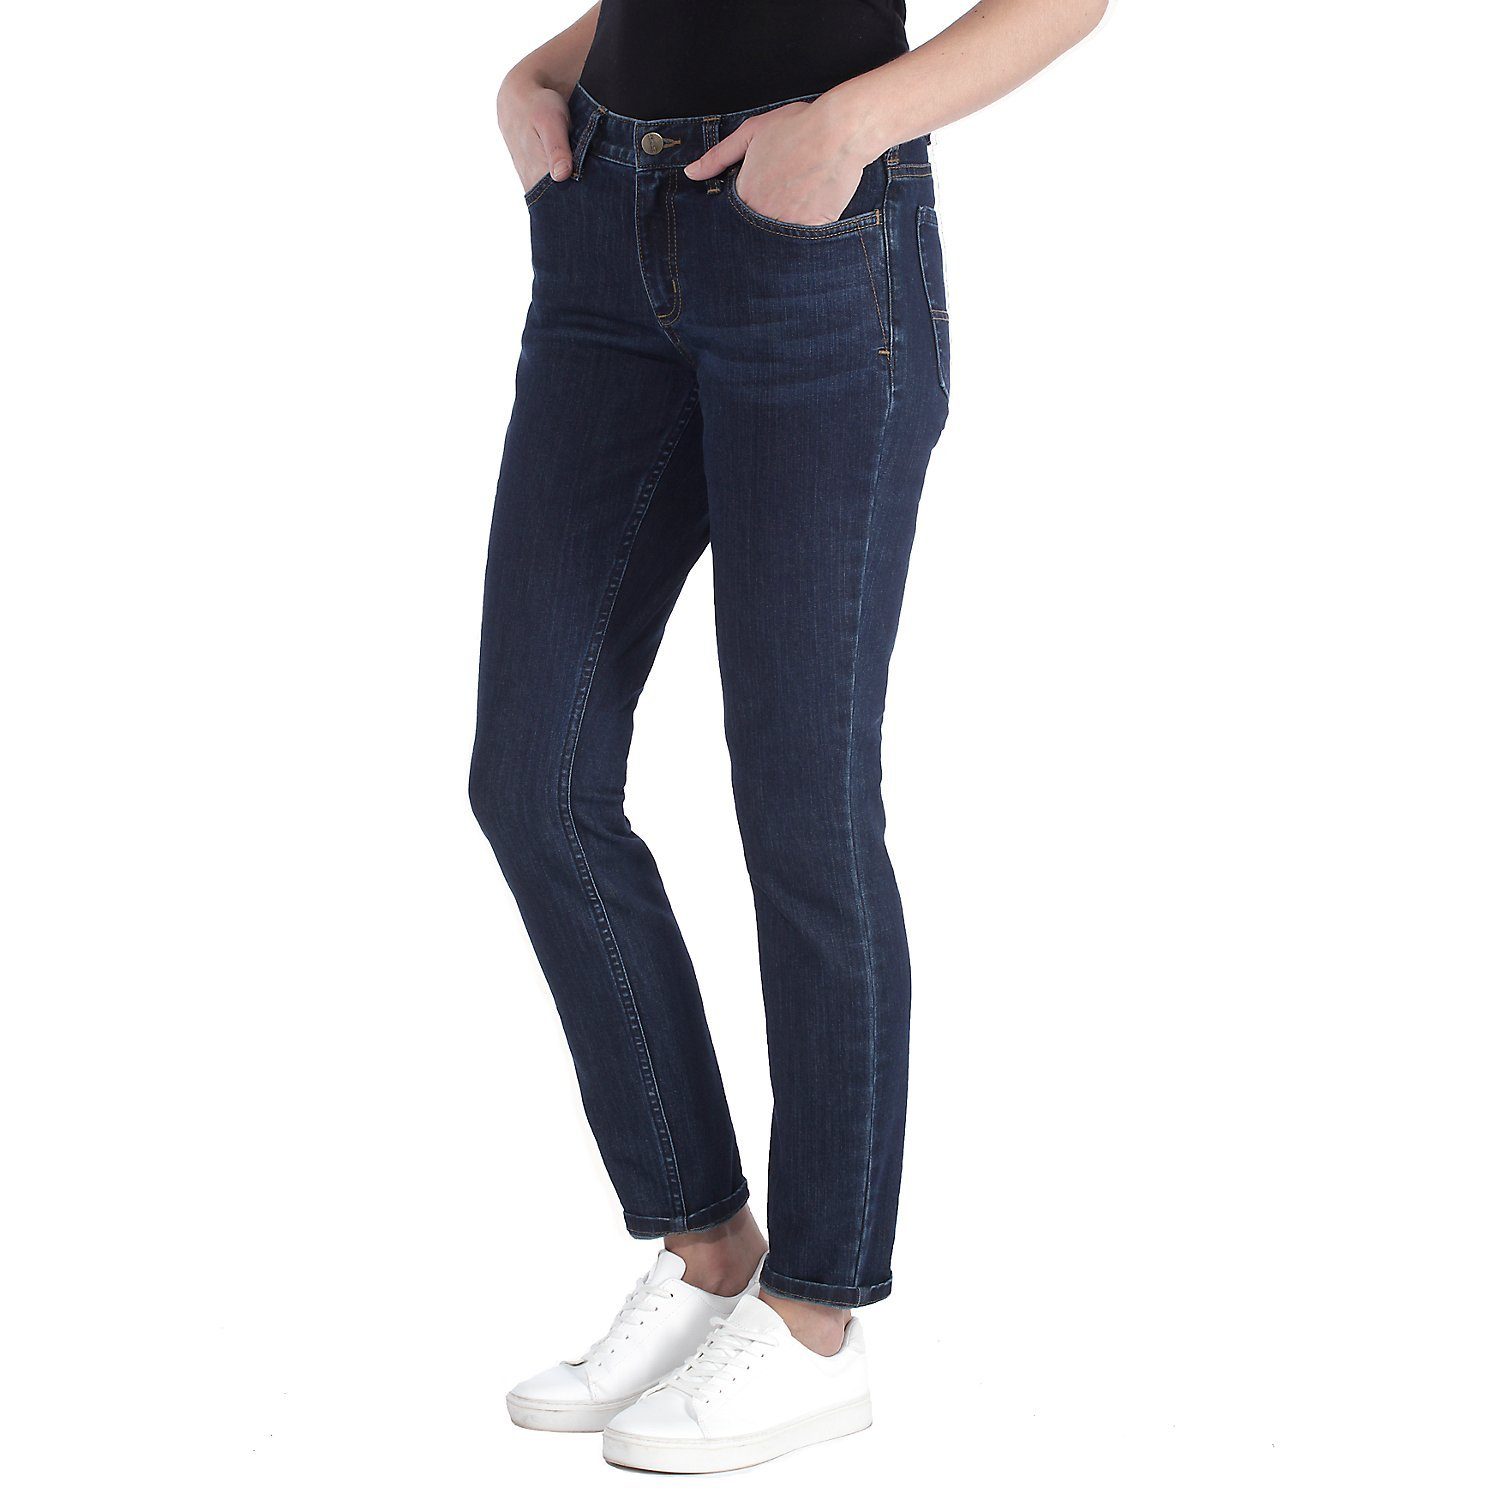 Slim Jeans Damen, Midnight Carhartt Skinny-fit-Jeans für Skinny Fit Sky Slim Fit,